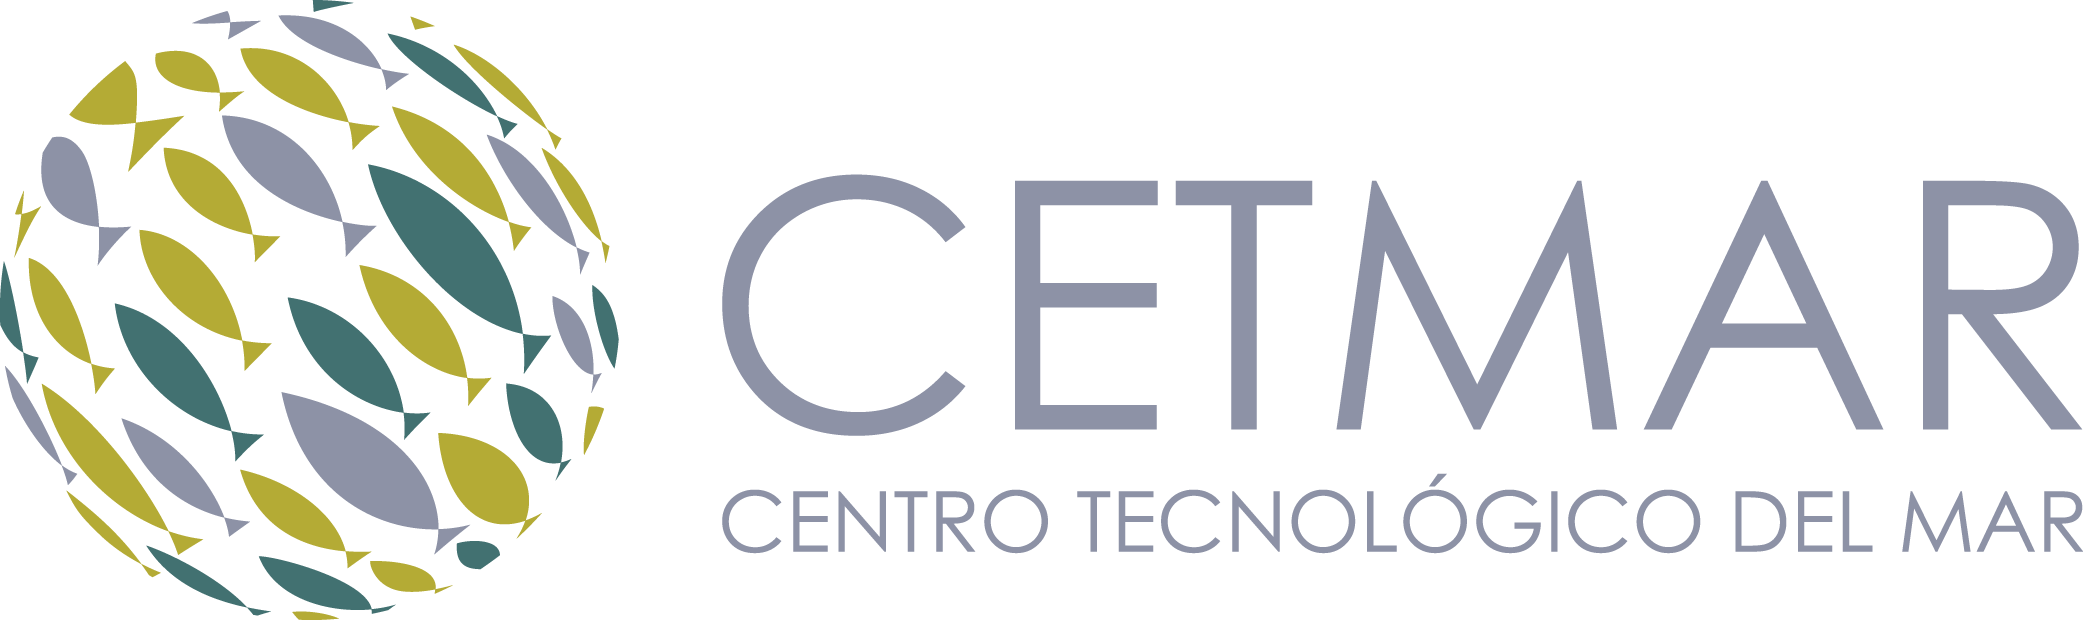 Centro Tecnológico del Mar (CETMAR)